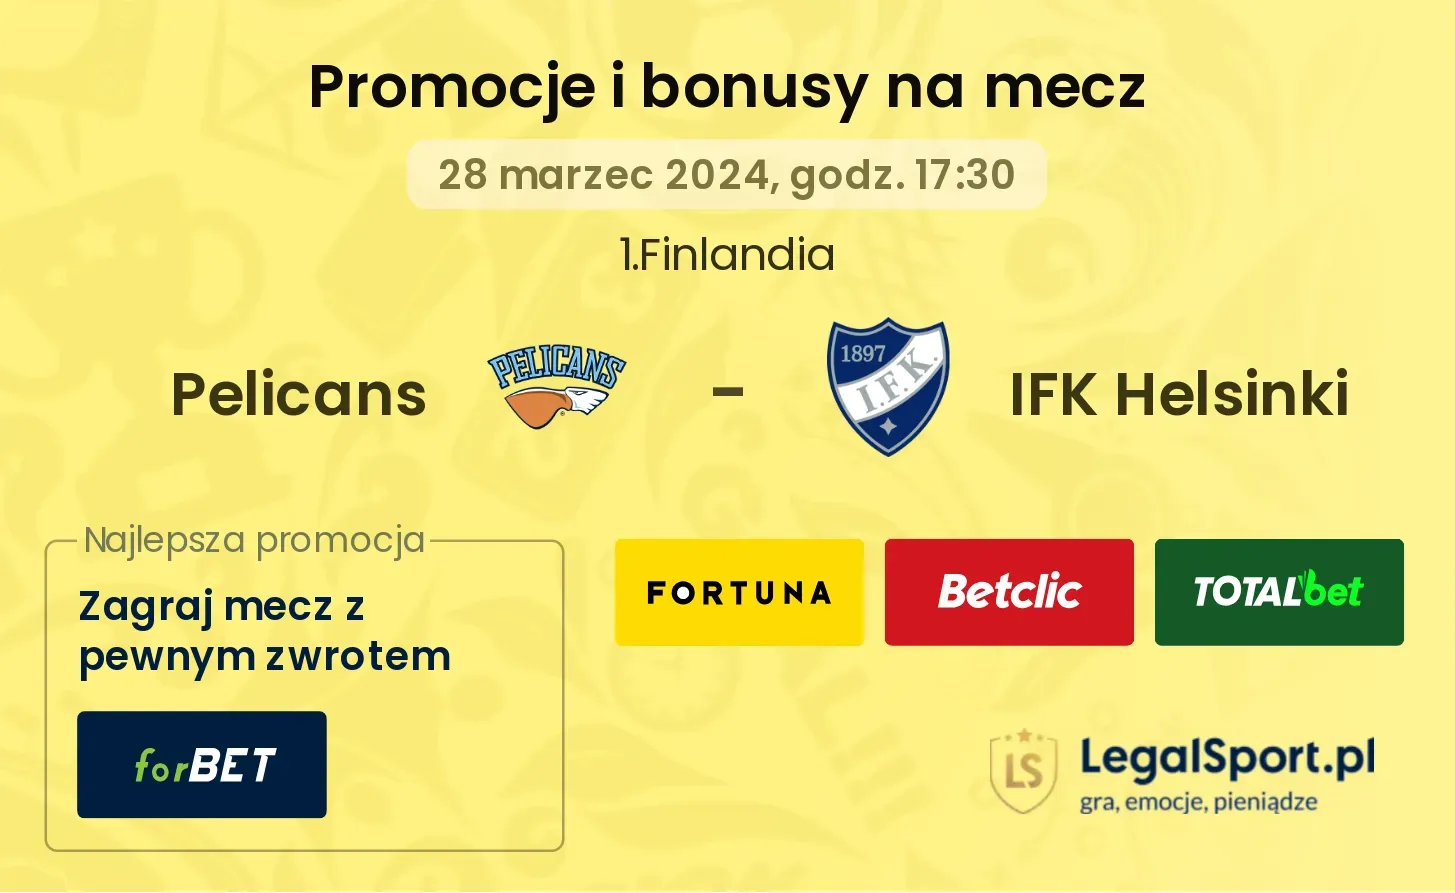 Pelicans - IFK Helsinki $s